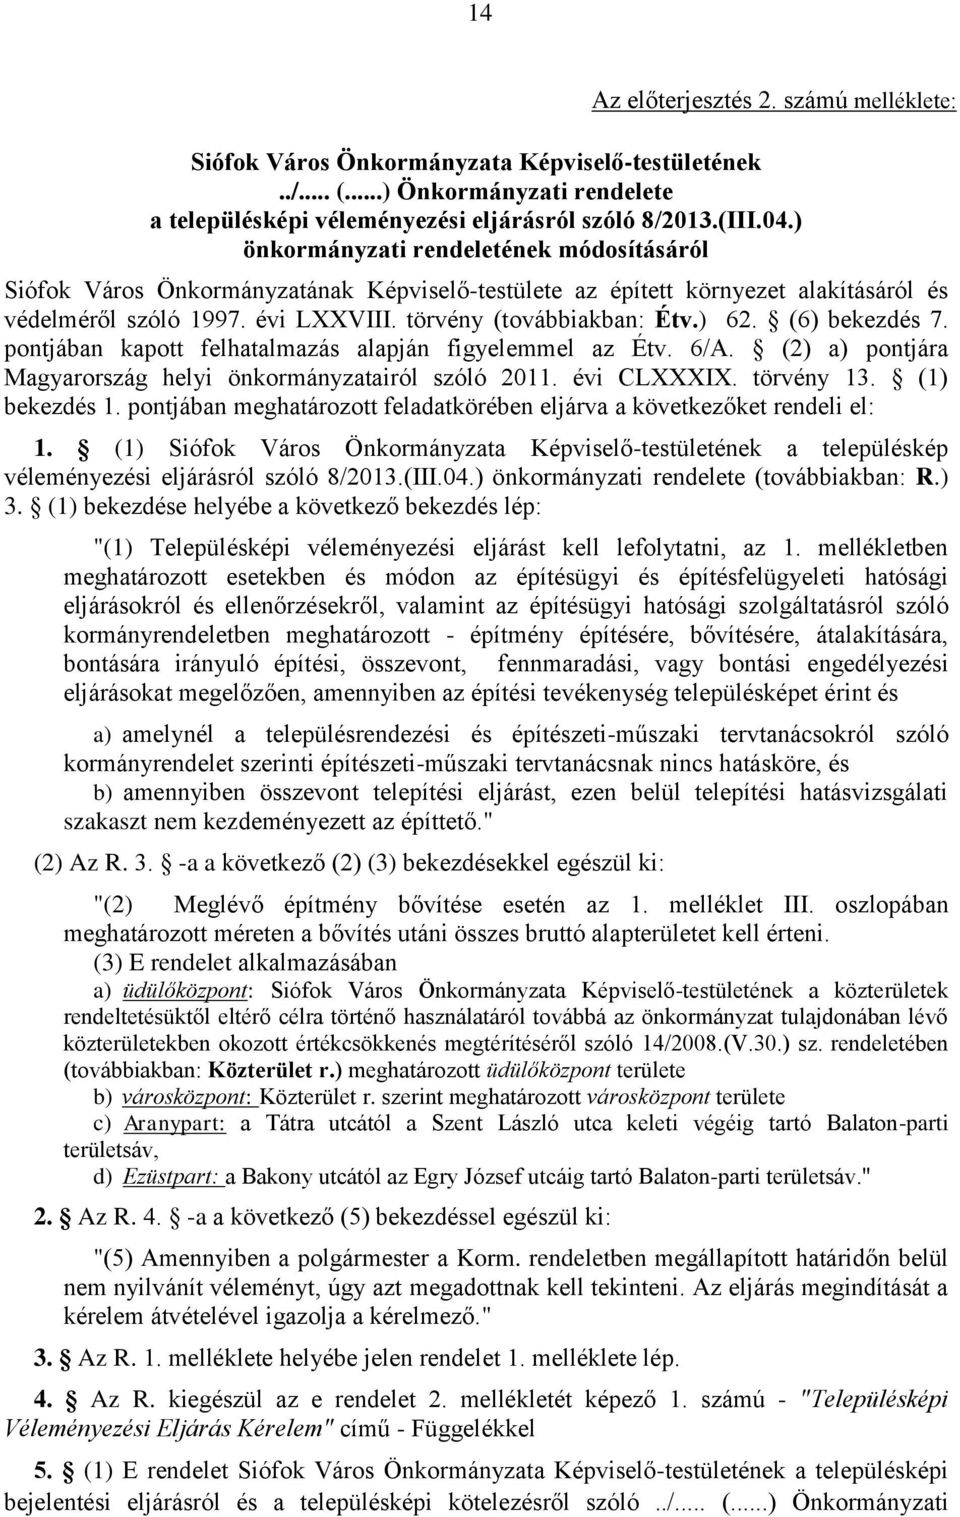 (6) bekezdés 7. pontjában kapott felhatalmazás alapján figyelemmel az Étv. 6/A. (2) a) pontjára Magyarország helyi önkormányzatairól szóló 2011. évi CLXXXIX. törvény 13. (1) bekezdés 1.